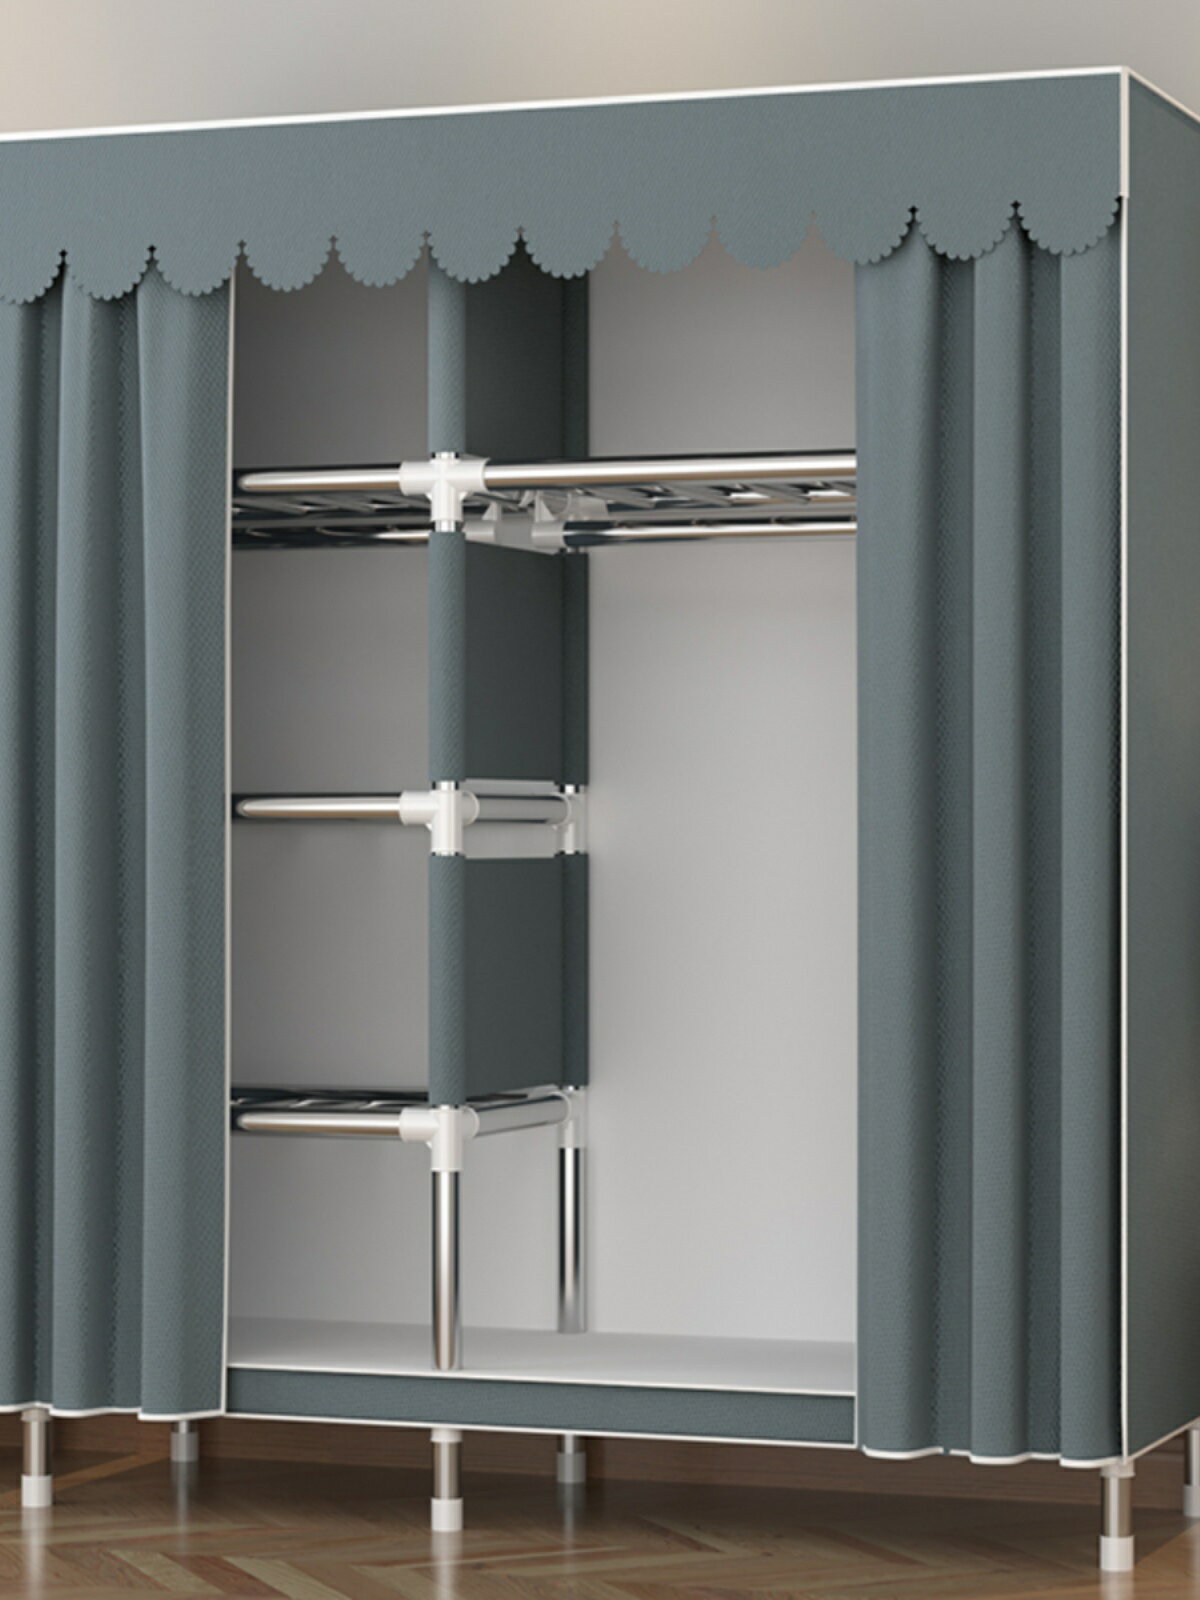 簡易衣柜家用臥室布衣柜出租房用結實耐用組裝簡約現代全鋼架衣櫥